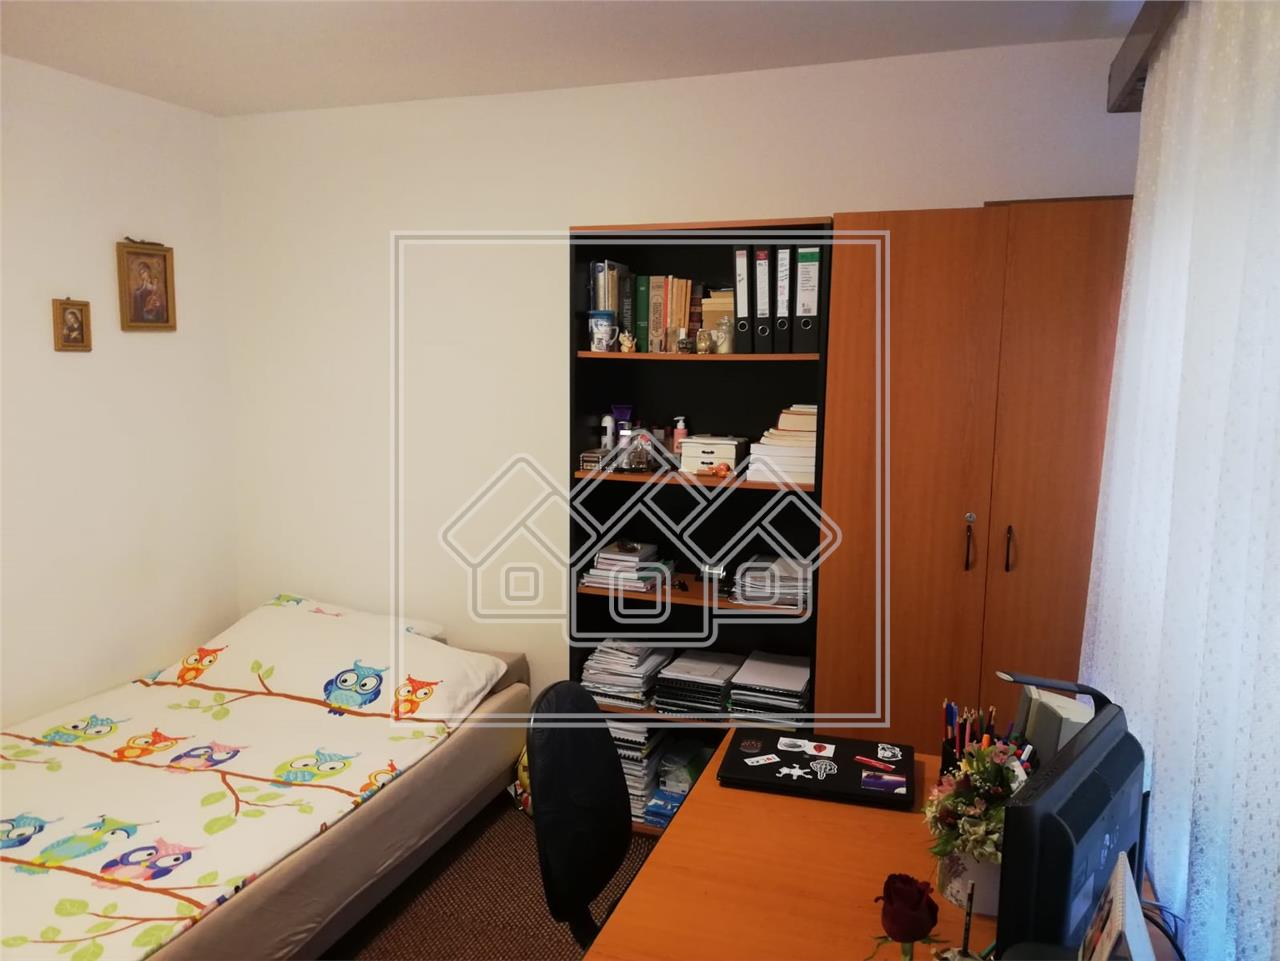 2-Zimmer-Wohnung zum Verkauf in Sibiu